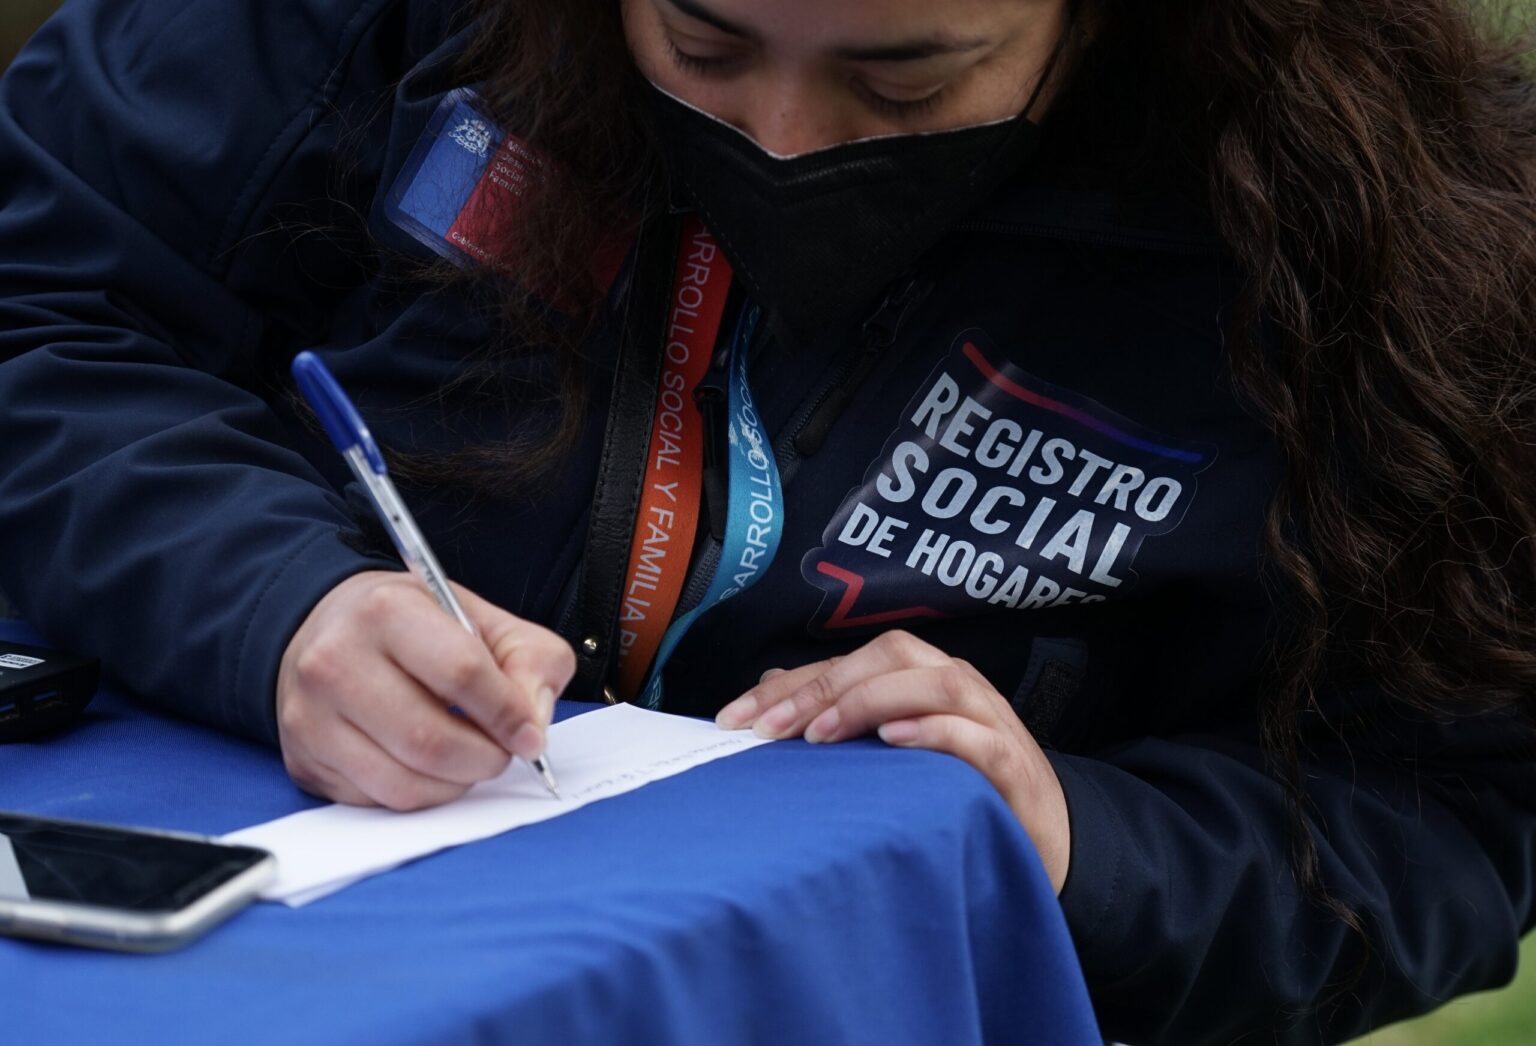 Registro Social de Hogares en Chile: ¿Cómo saber en qué tramo estoy?